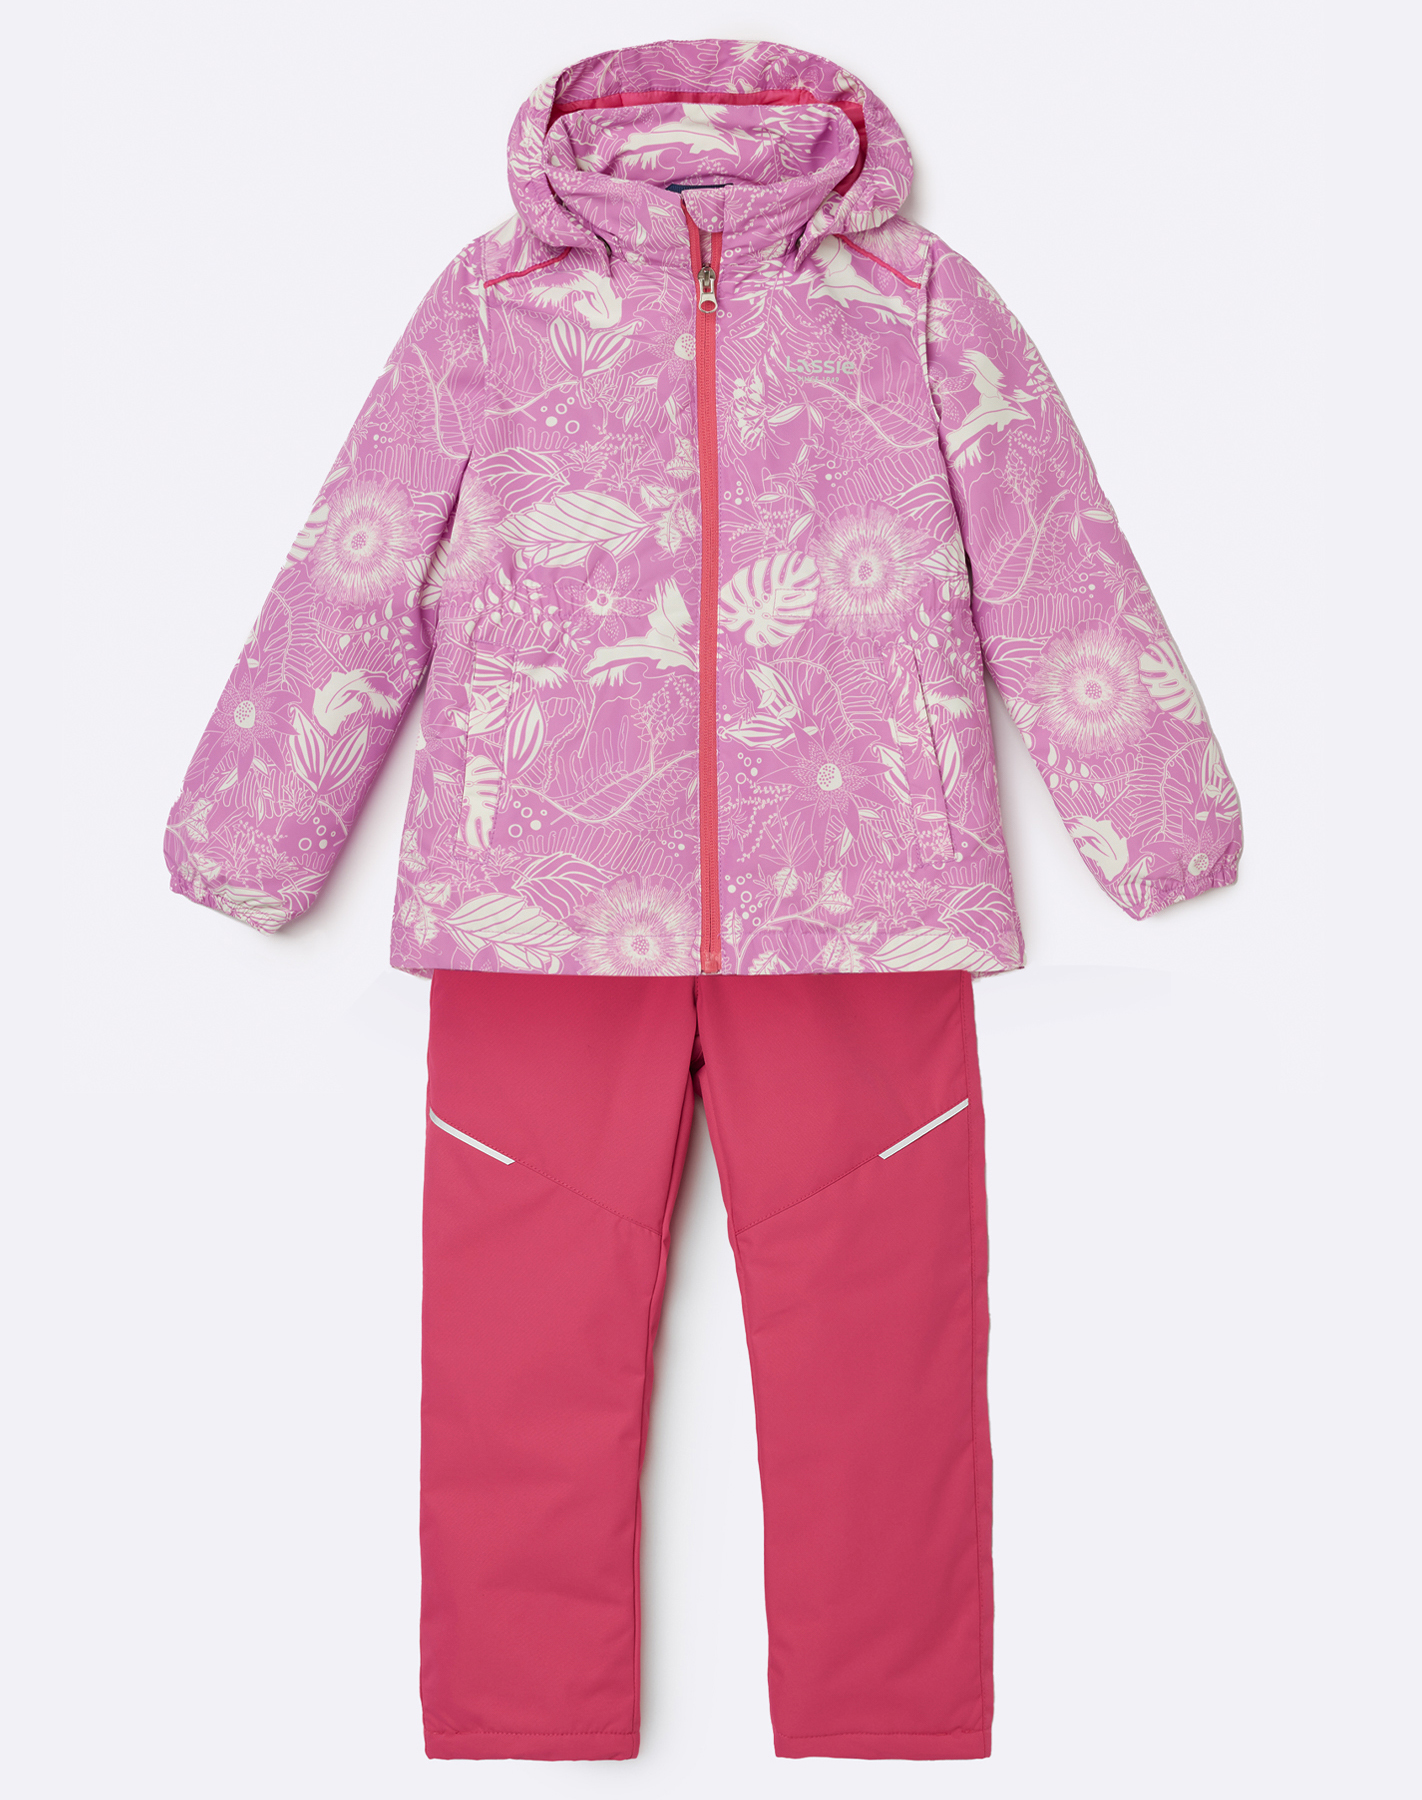 Комплект верхней одежды детский Lassie Manna 7100042A, с рисунком  розовый, 116.